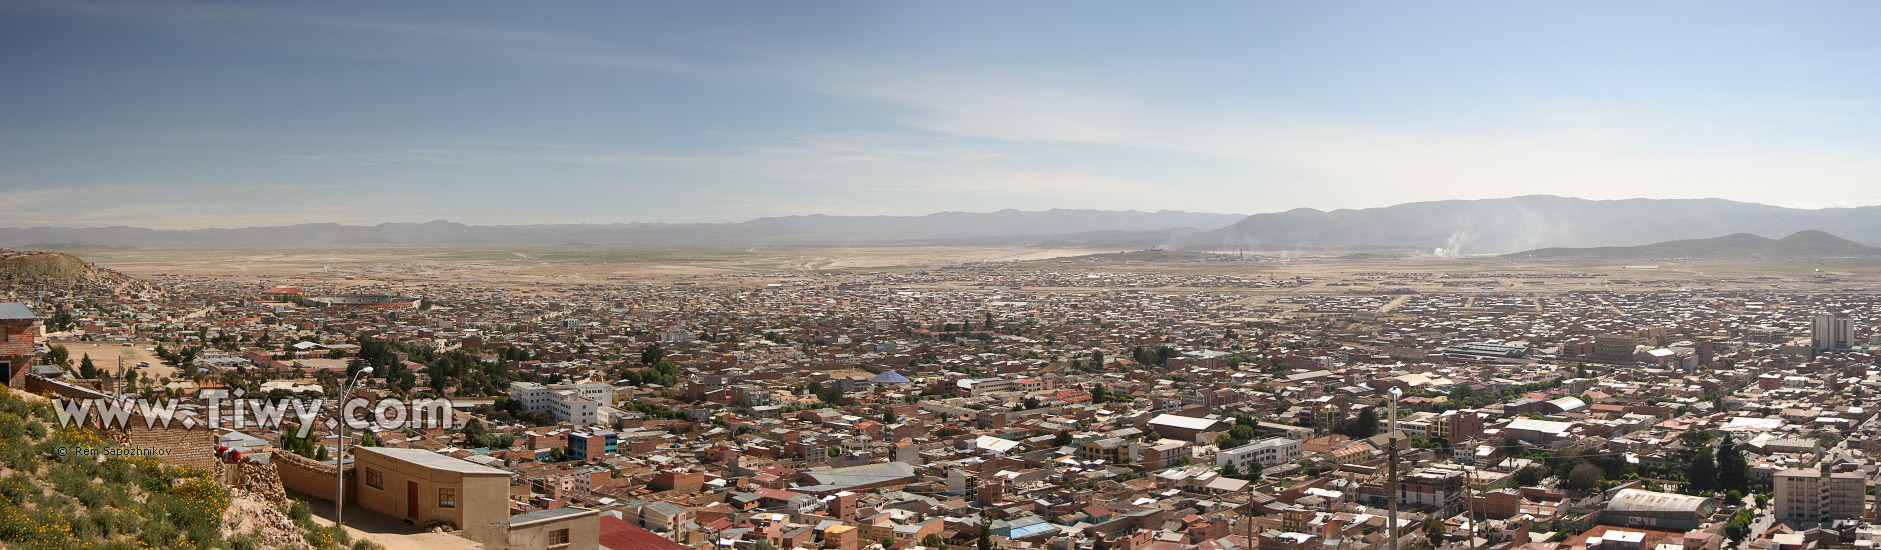 El panorama de Oruro de piedra